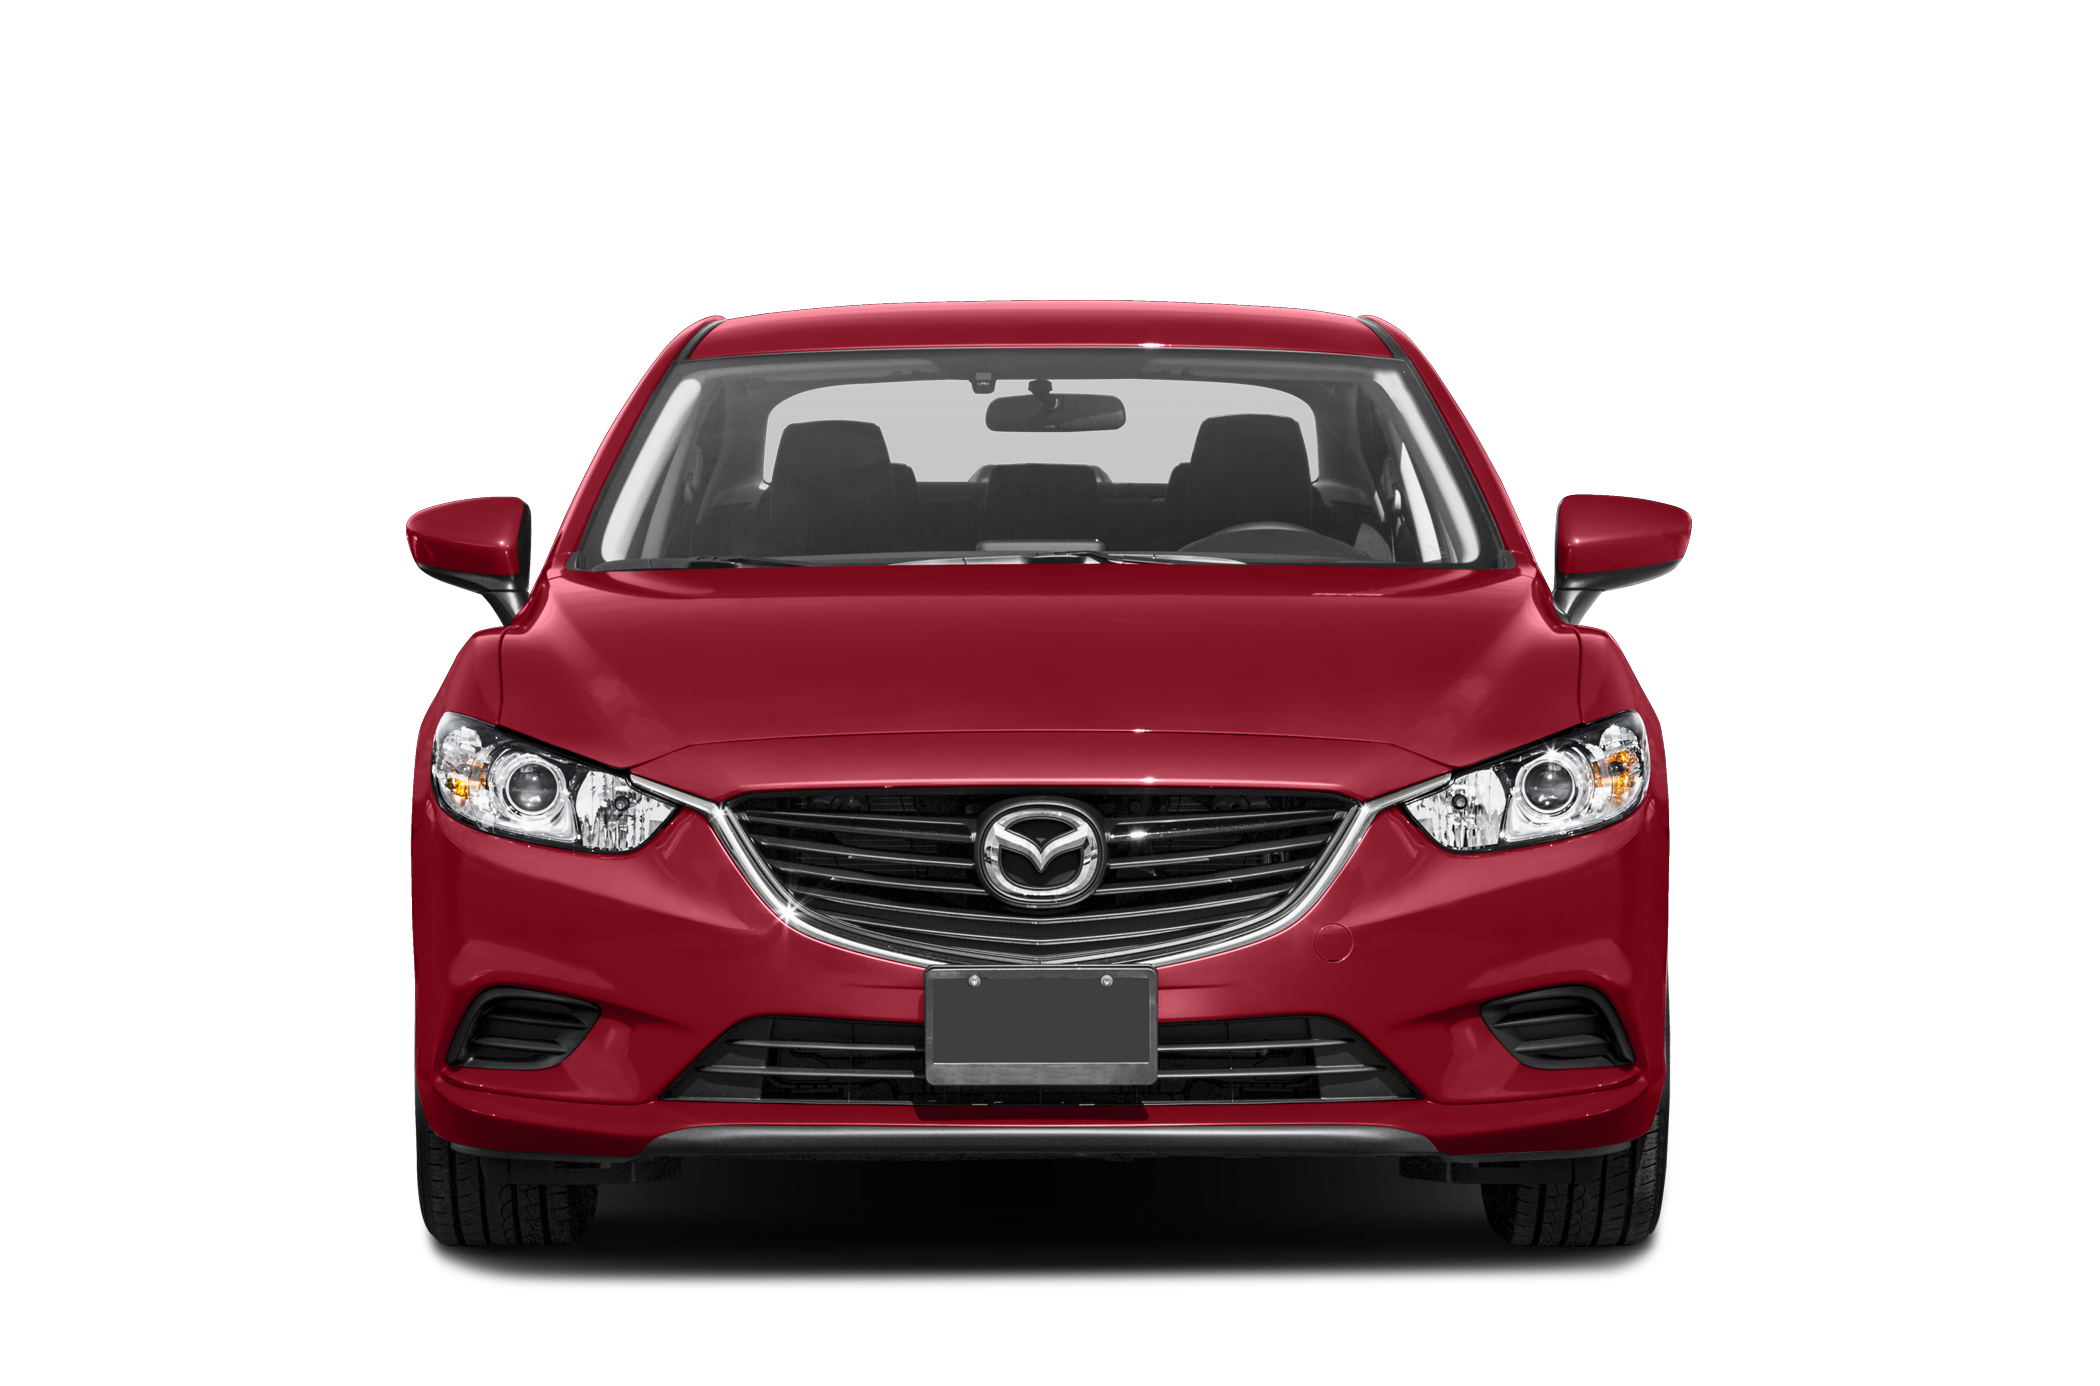 2016 Mazda Mazda6